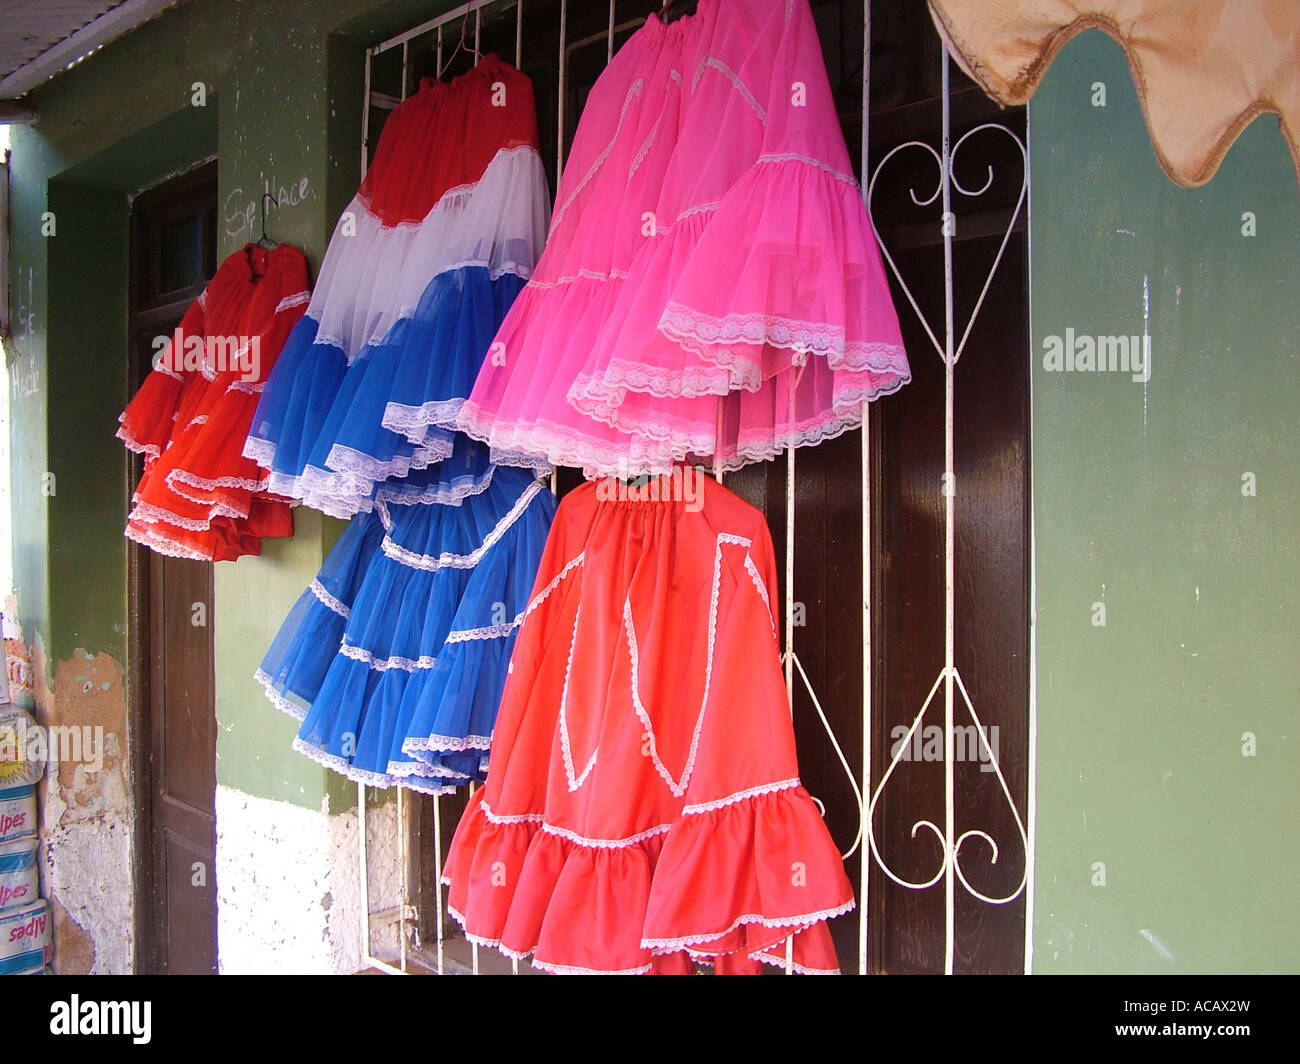 Jupes colorés traditionnels dans un magasin, Concepcion, Paraguay Banque D'Images